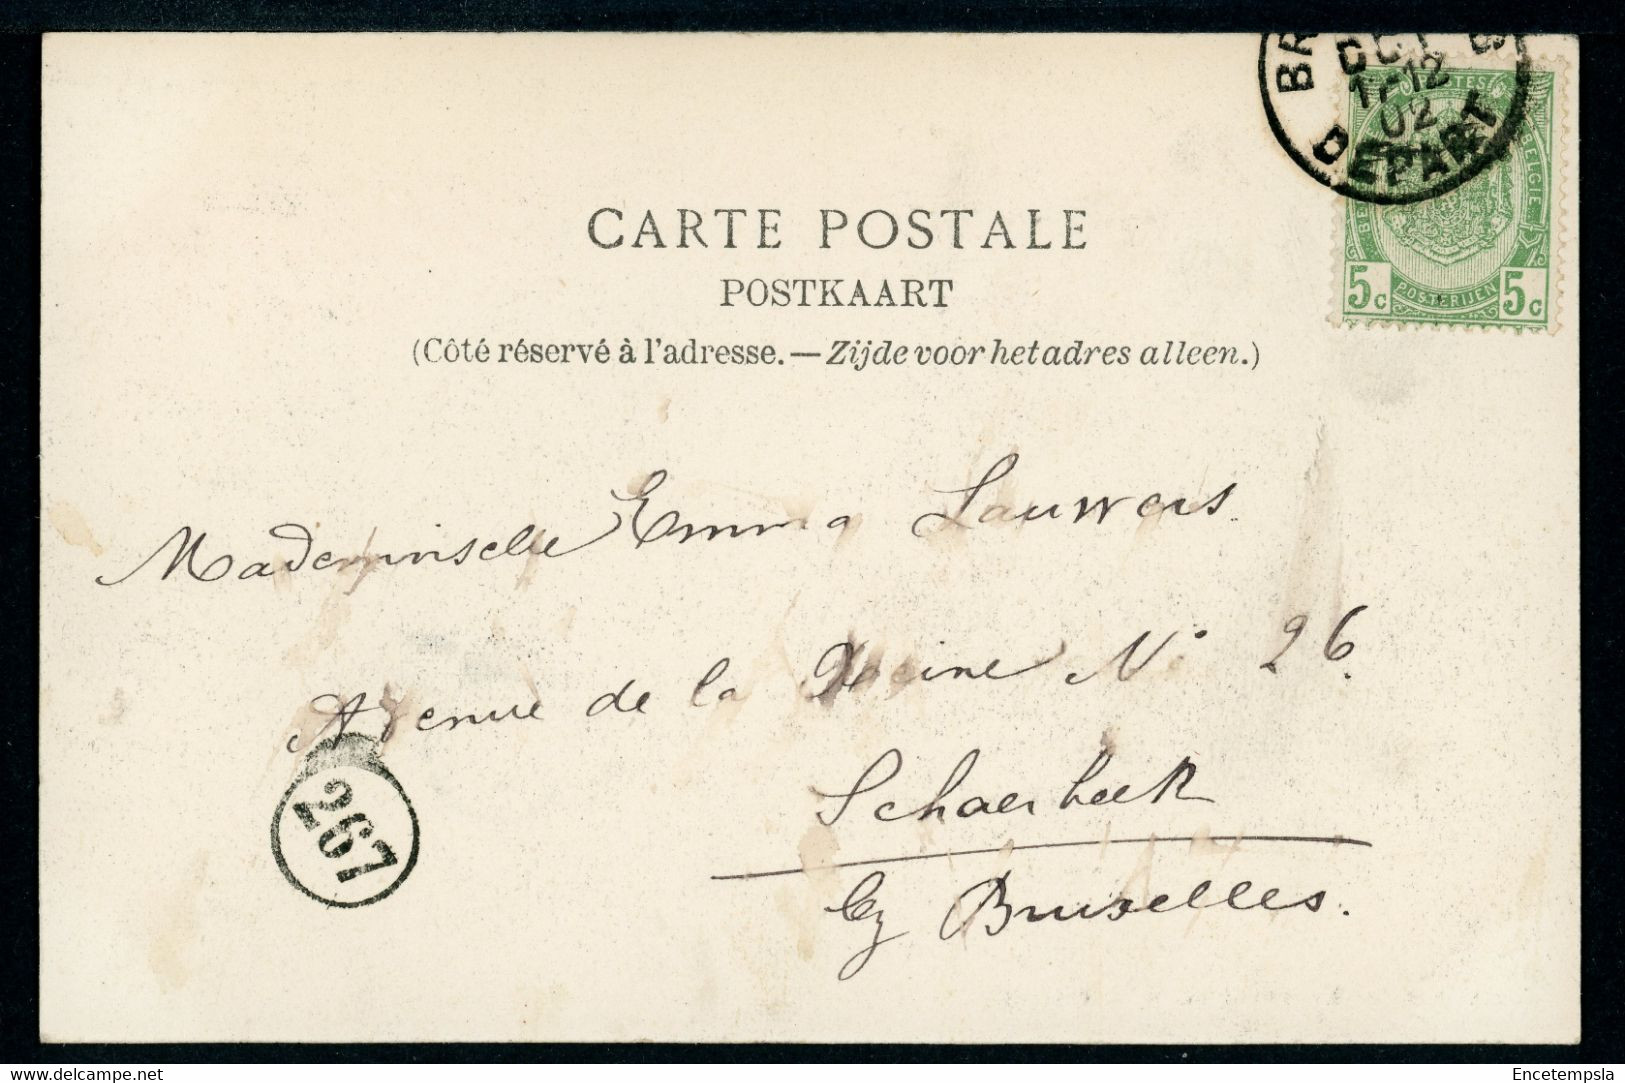 CPA - Carte Postale - Belgique - Bruxelles - Le Canal De Willebroeck - 1902  (CP20371OK) - Transport (sea) - Harbour